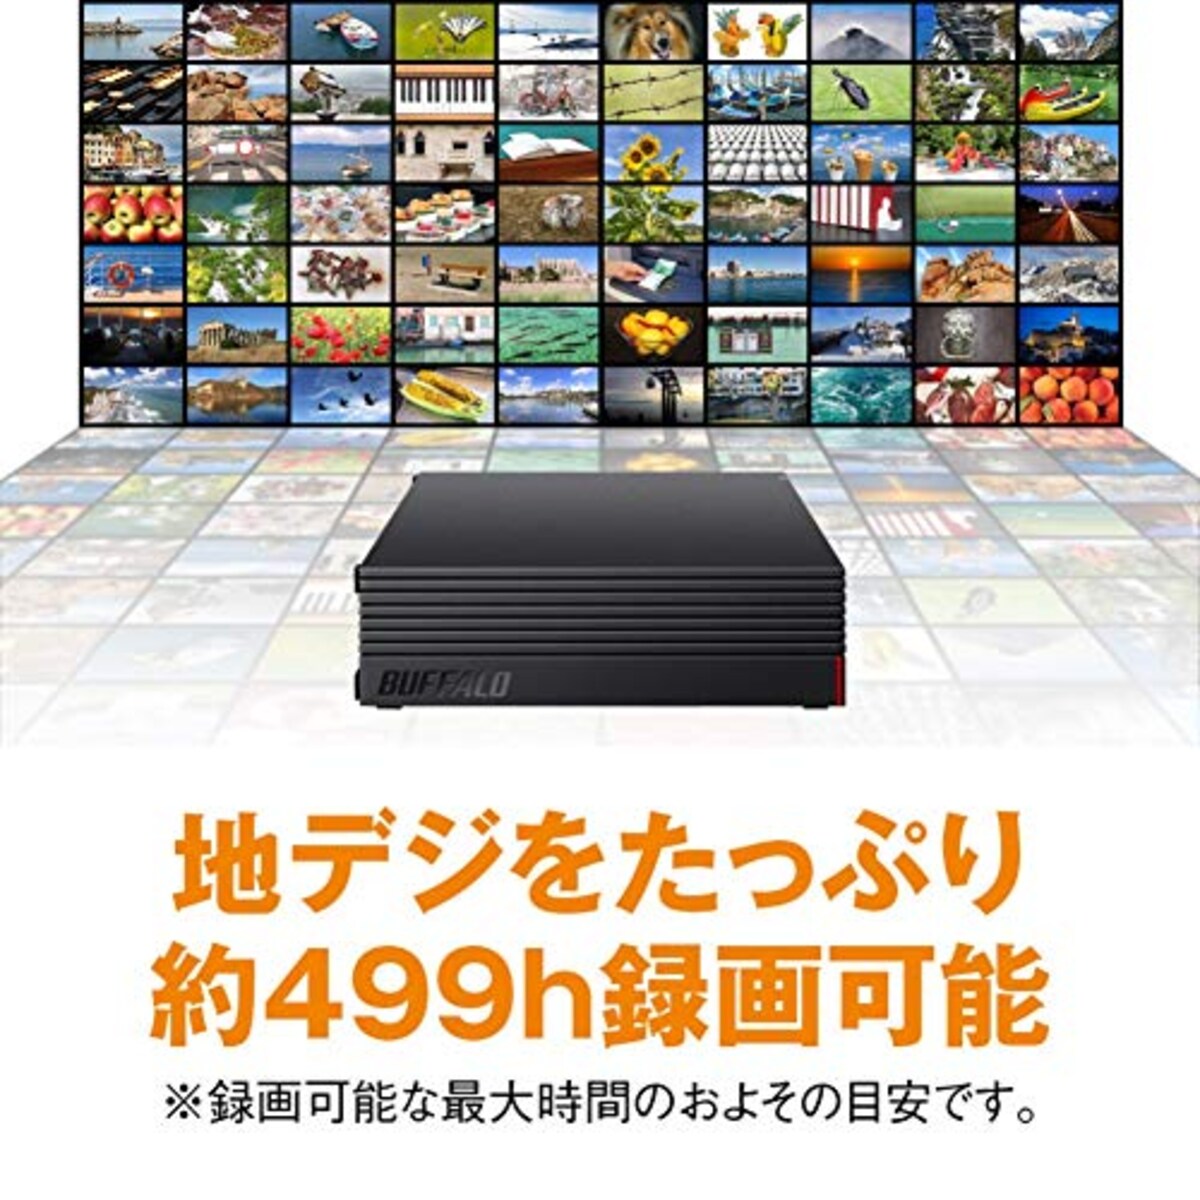  BUFFALO 外付けハードディスク 4TB テレビ録画/PC/PS4/4K対応 HD-AD4U3 + Acer モニター ディスプレイ KA220HQbid 21.5インチ/フルHD/5ms/HDMI端子対応画像4 